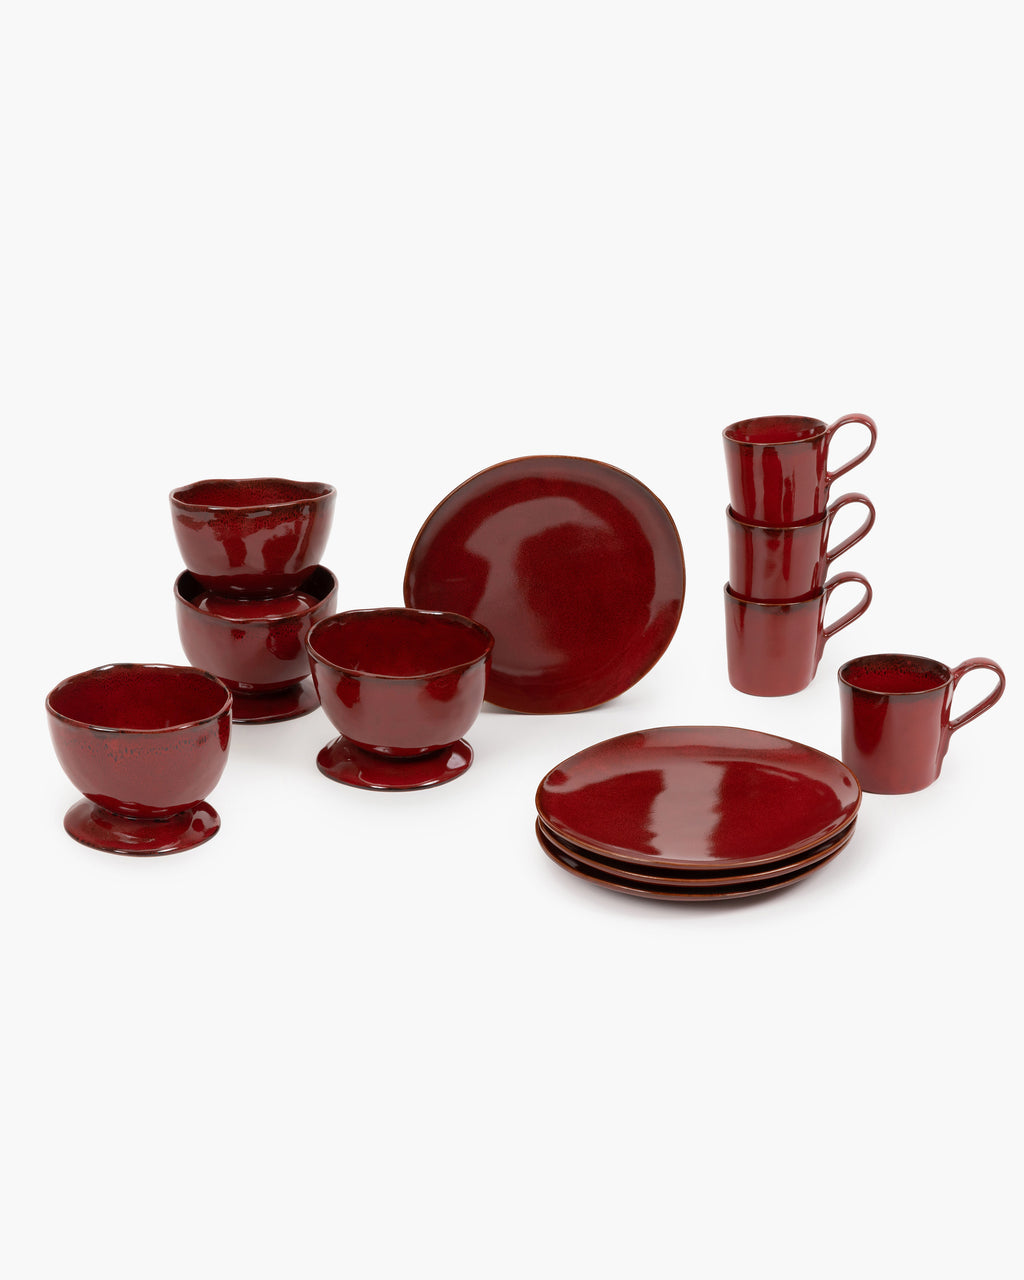 Breakfast Set 12 pieces - La Mère tableware by Marie Michielssen - venetian red